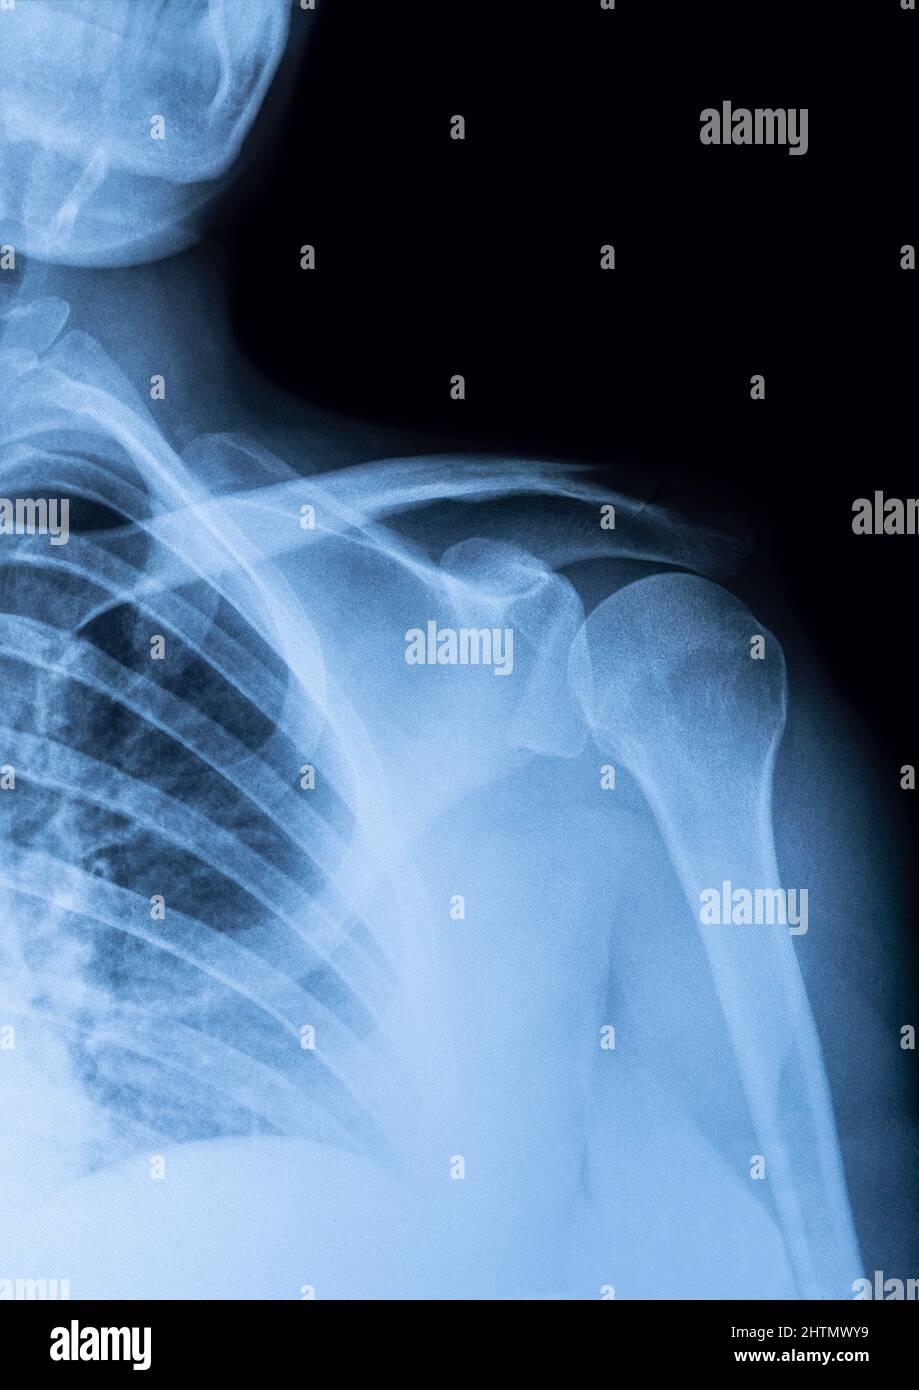 les rayons x sont des images de l'articulation de l'épaule pour voir les blessures des tendons et des os pour un diagnostic médical. Banque D'Images